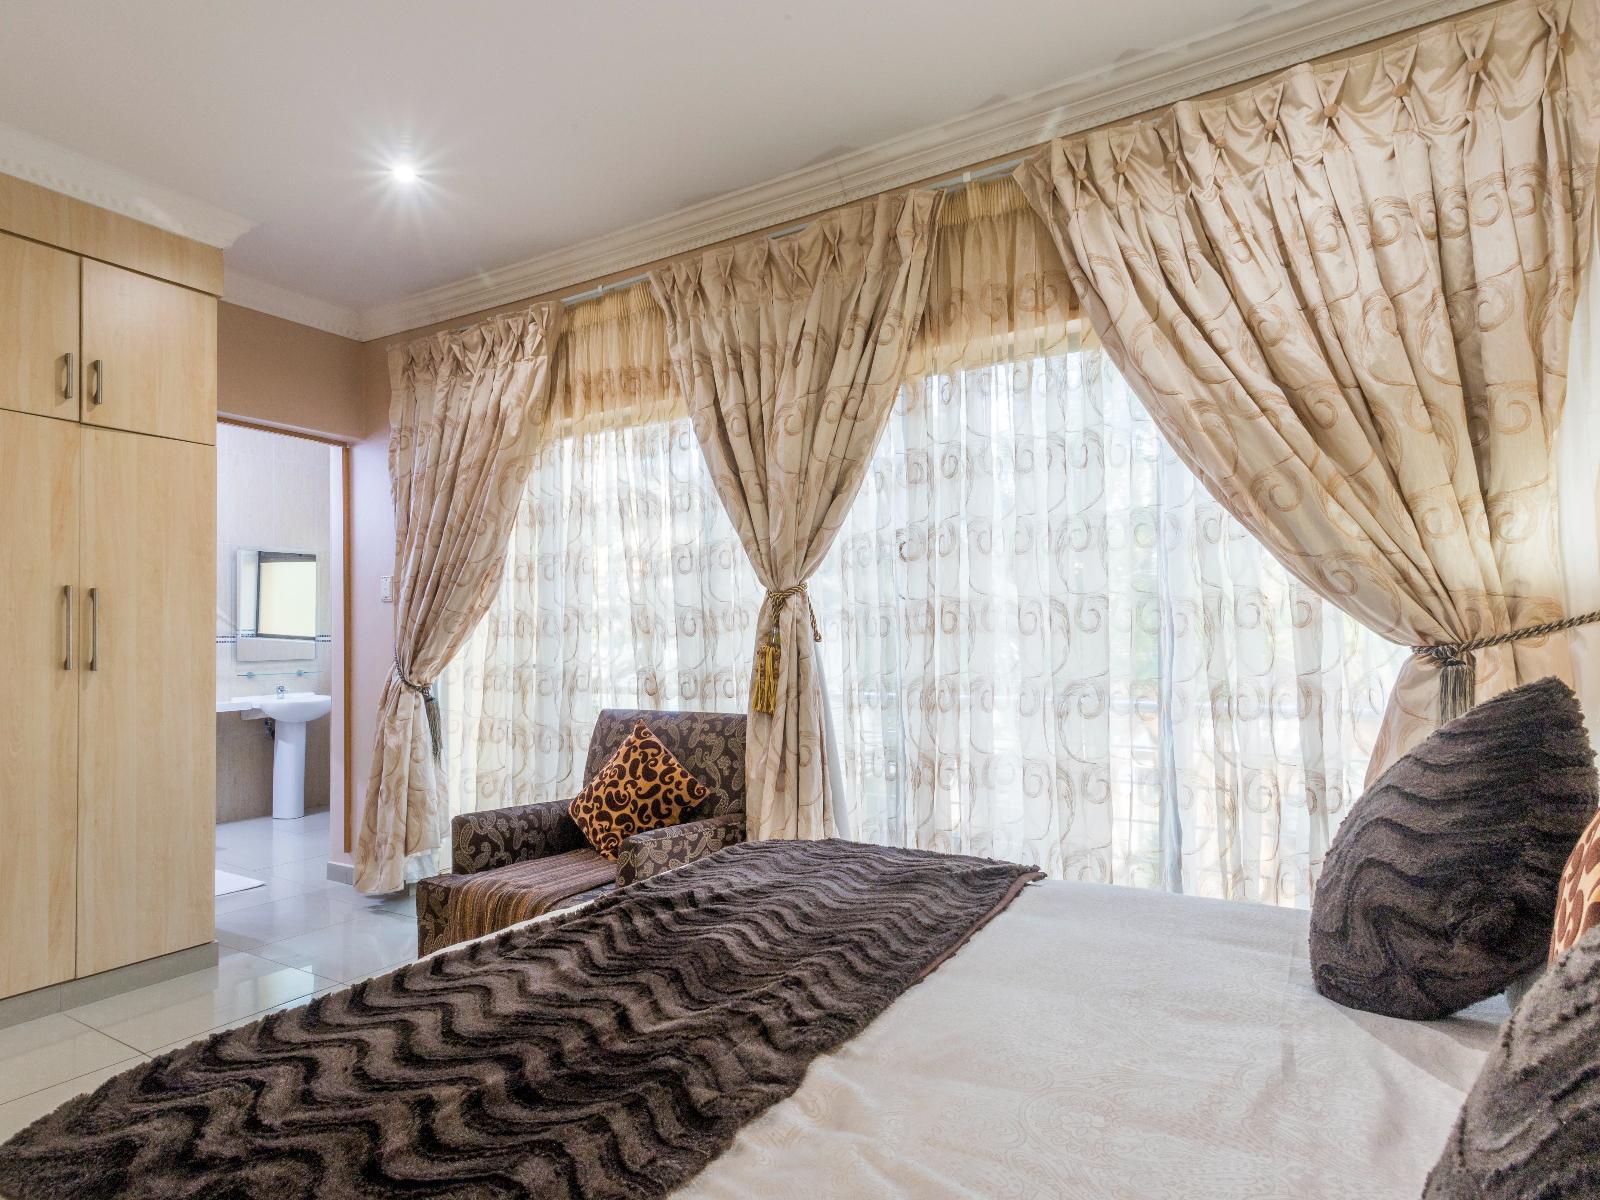 Ezulwini Guest House Ballito Kwazulu Natal South Africa Bedroom